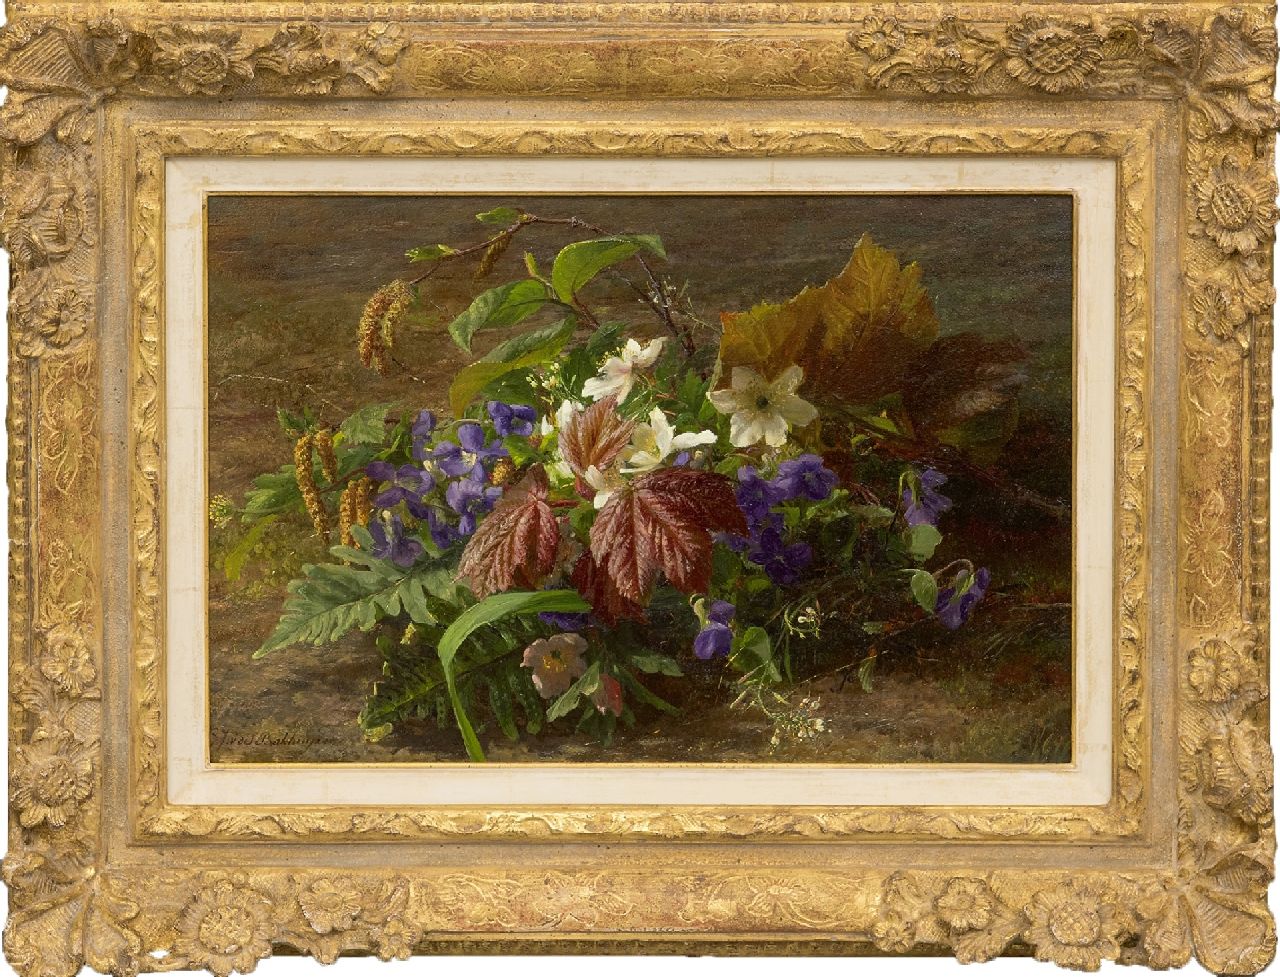 Sande Bakhuyzen G.J. van de | 'Gerardine' Jacoba van de Sande Bakhuyzen, Herfstboeket met wilde viooltjes op de bosgrond, olieverf op paneel 24,8 x 36,6 cm, gesigneerd linksonder